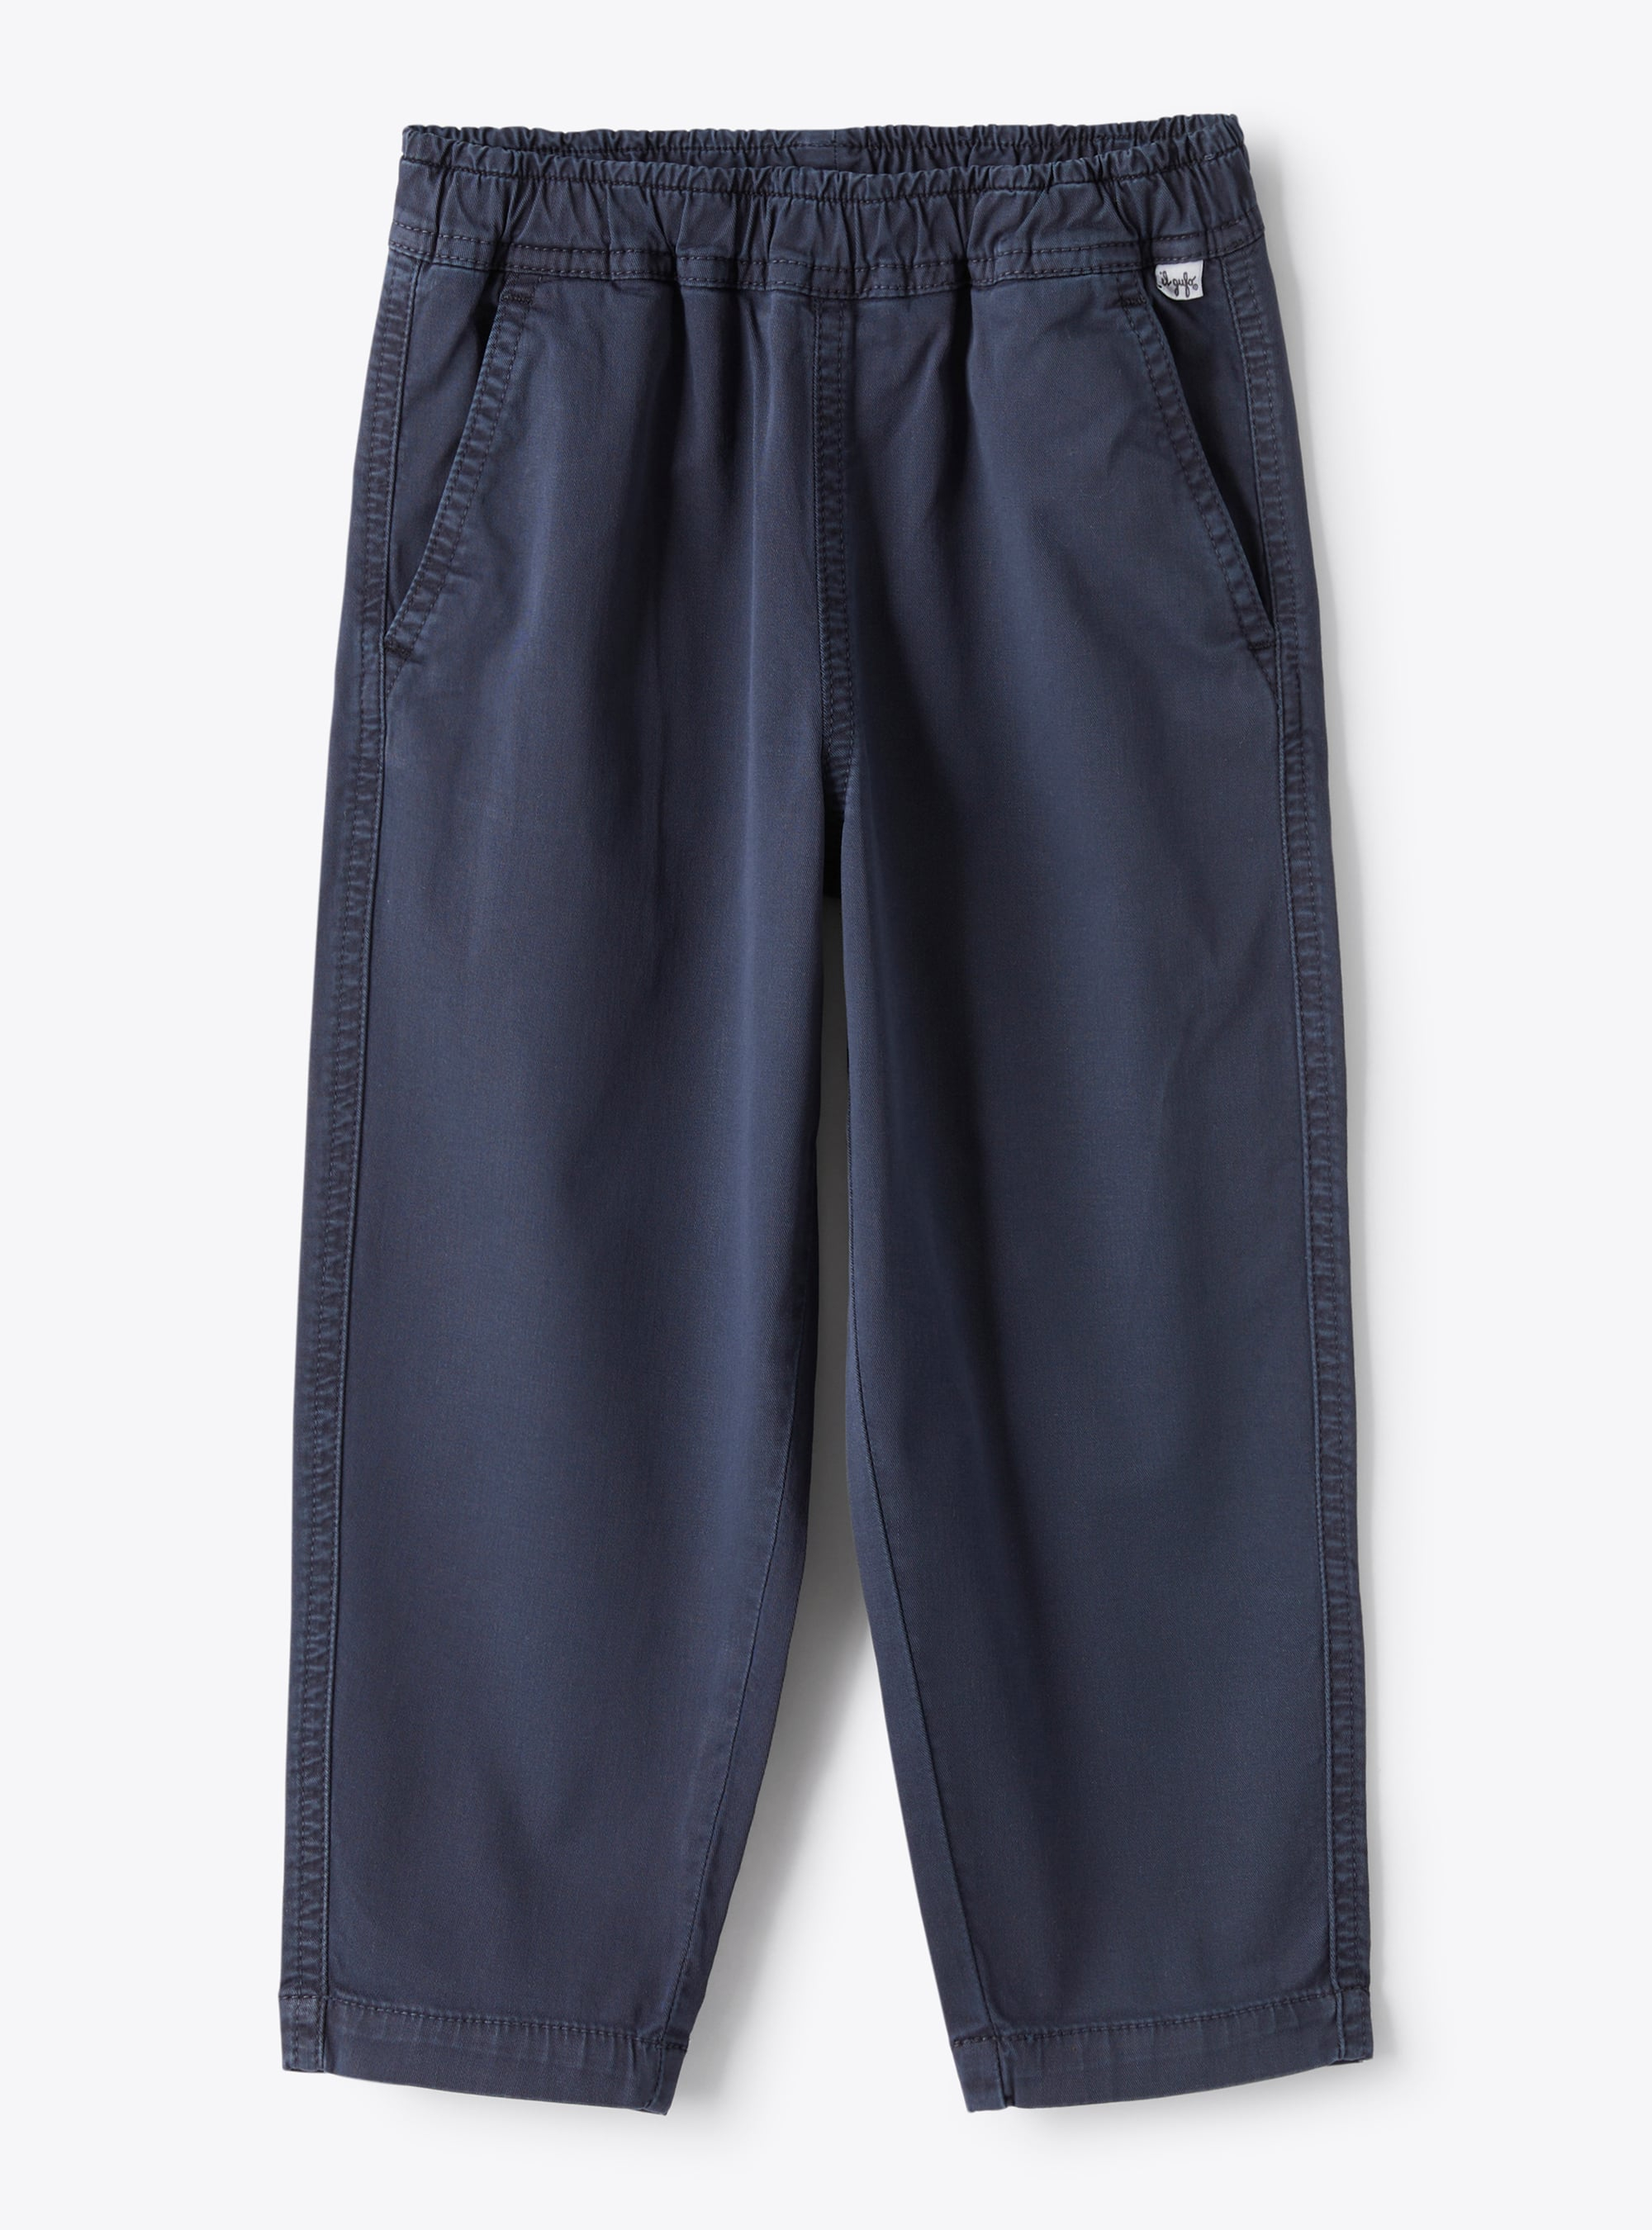 Pantalone lungo in gabardina tinto capo di colore blu navy - Pantaloni - Il Gufo